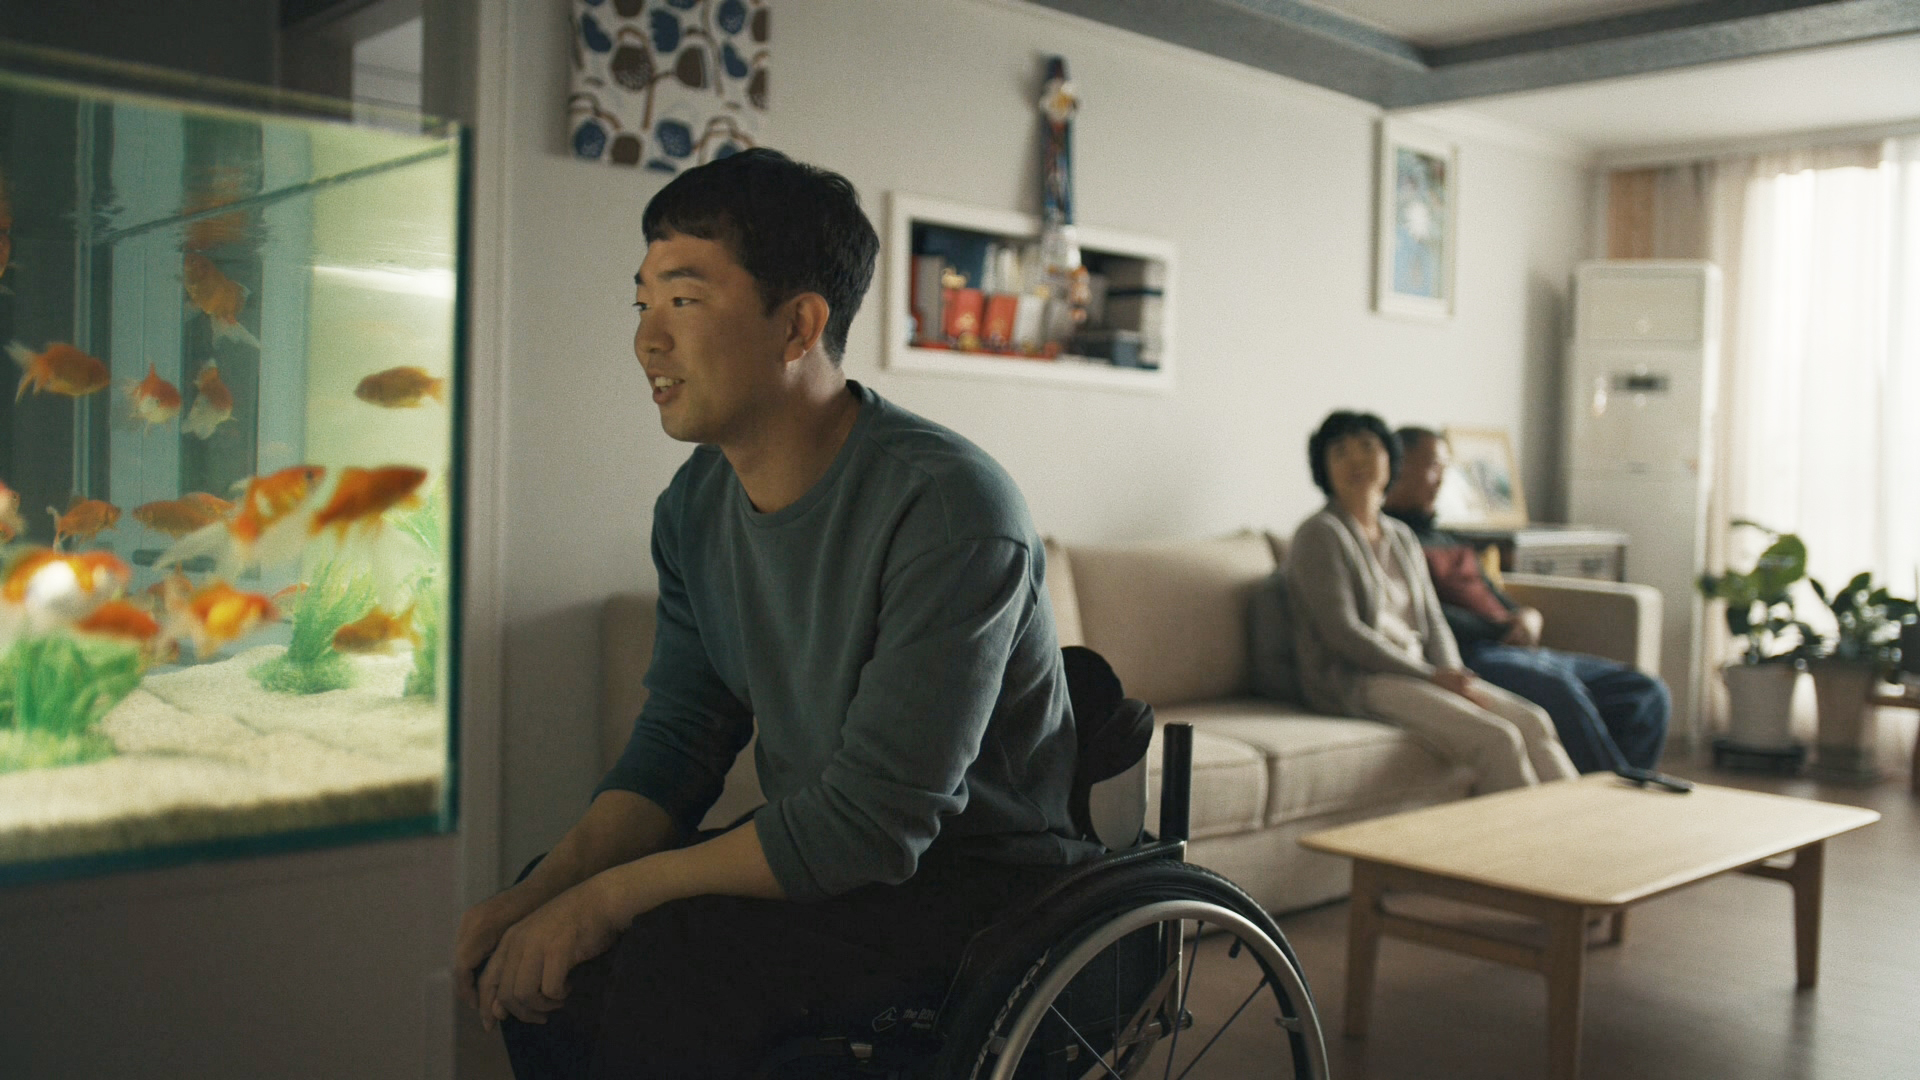 Hyundai Motor представила видео новой кампании «Второй первый шаг»